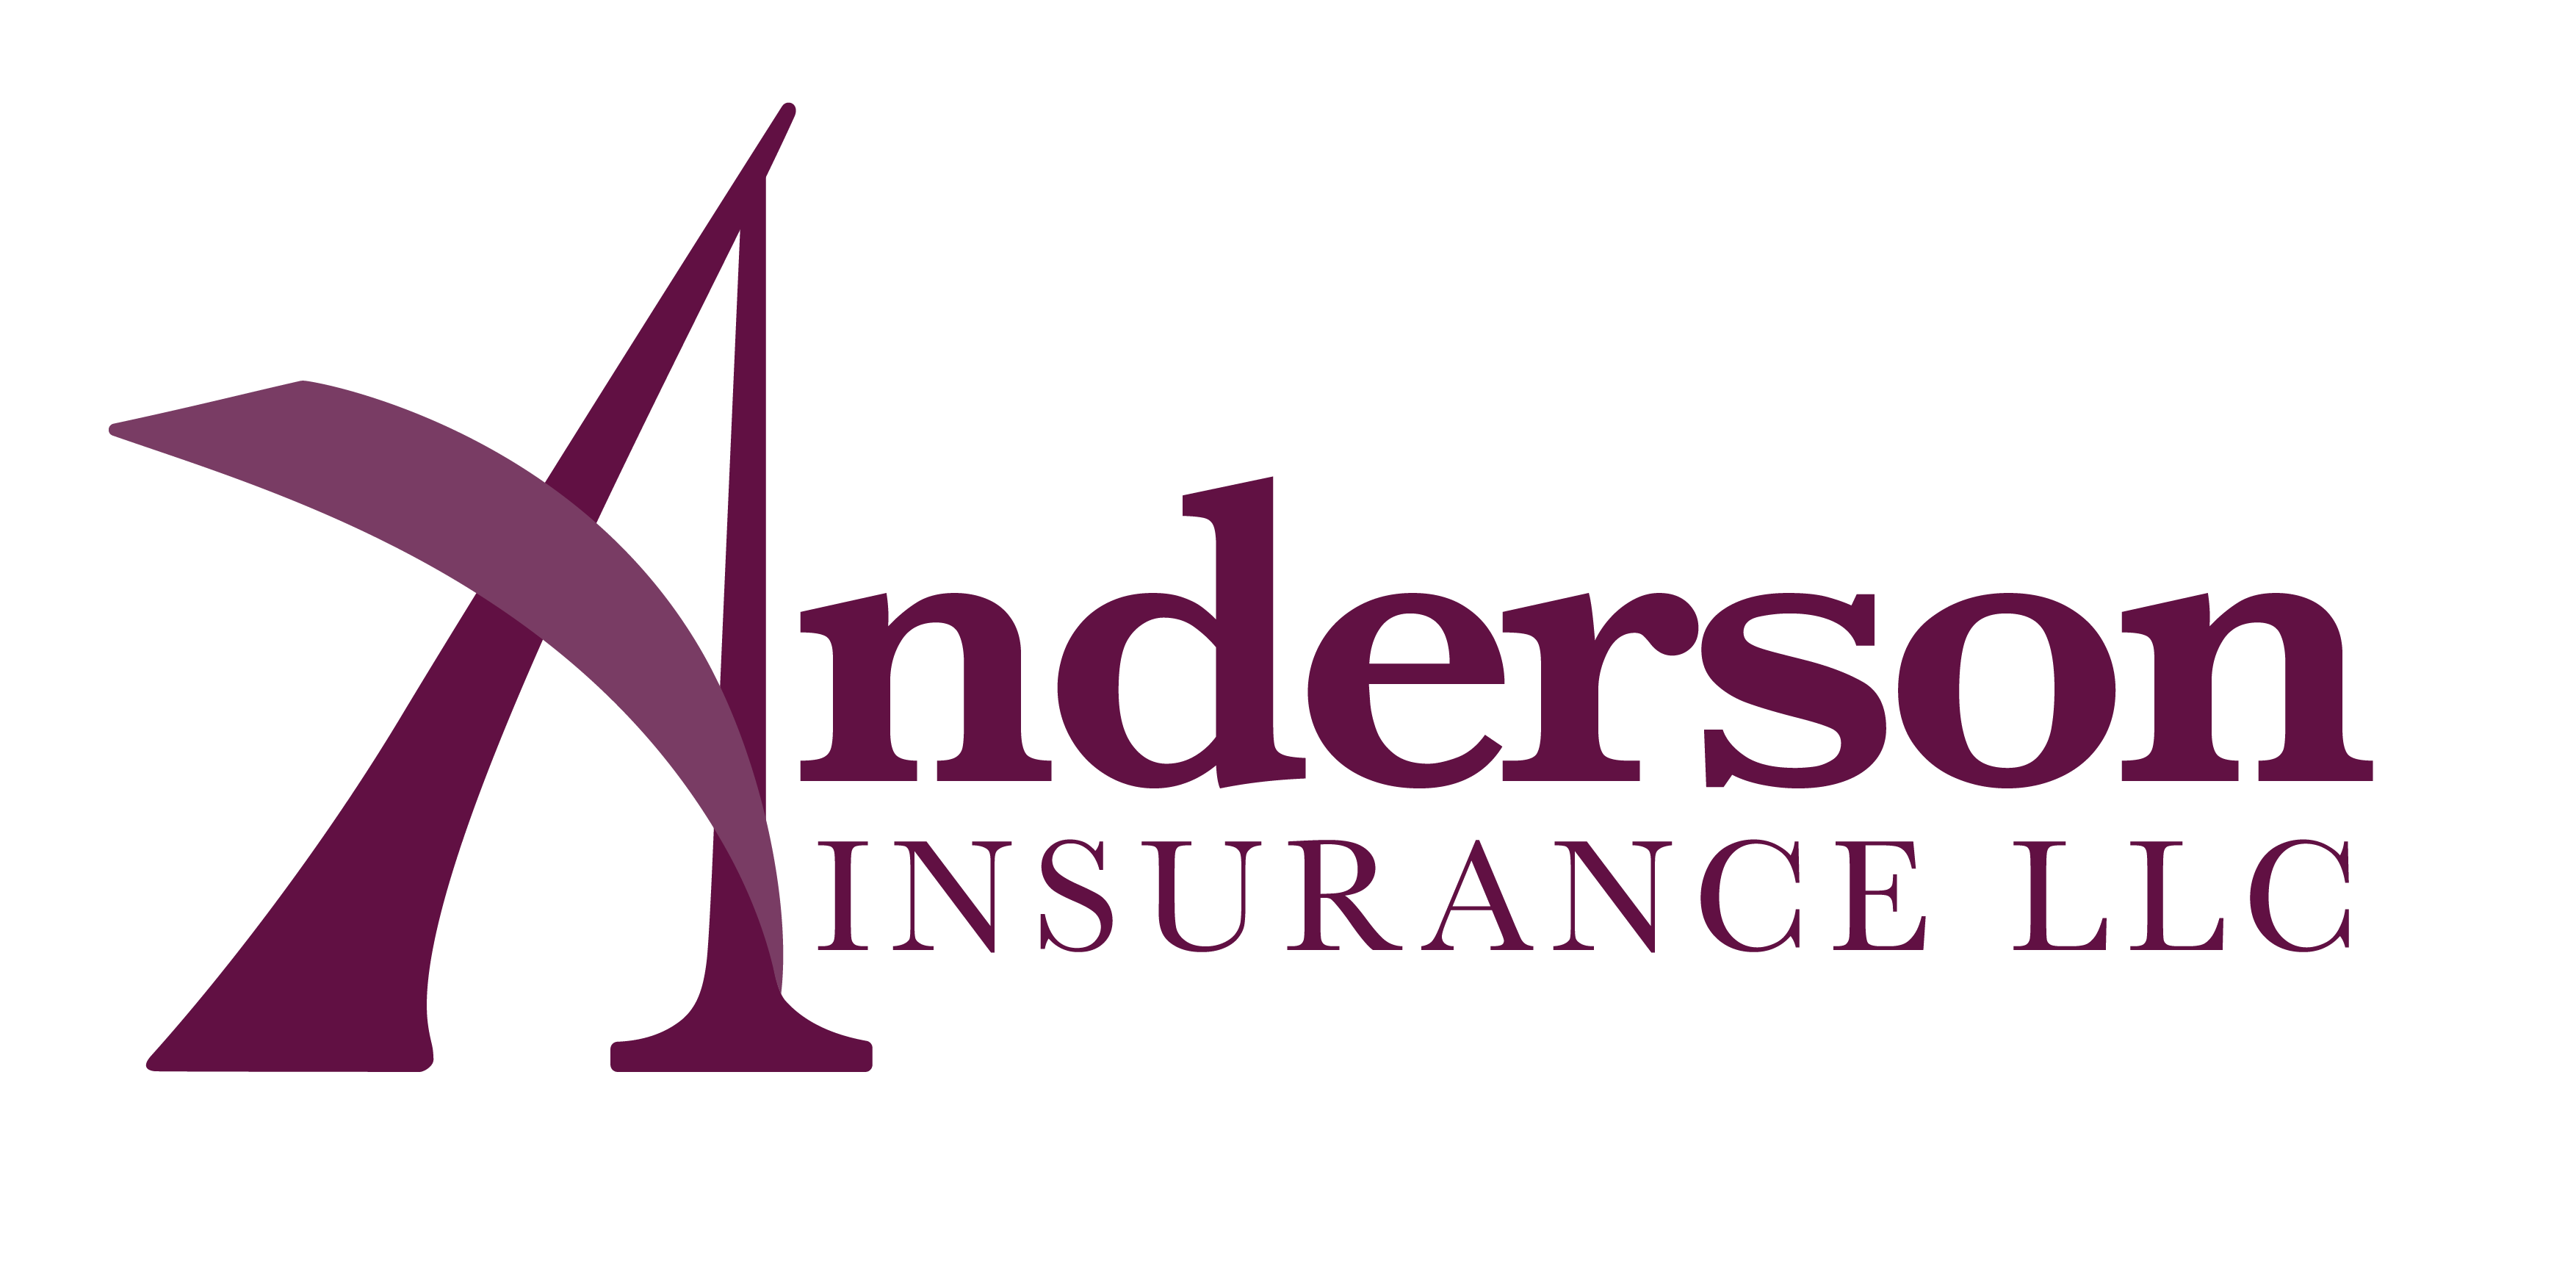 Anderson Logo - Anderson Insurance. Insurance QuotesAnderson Insurance